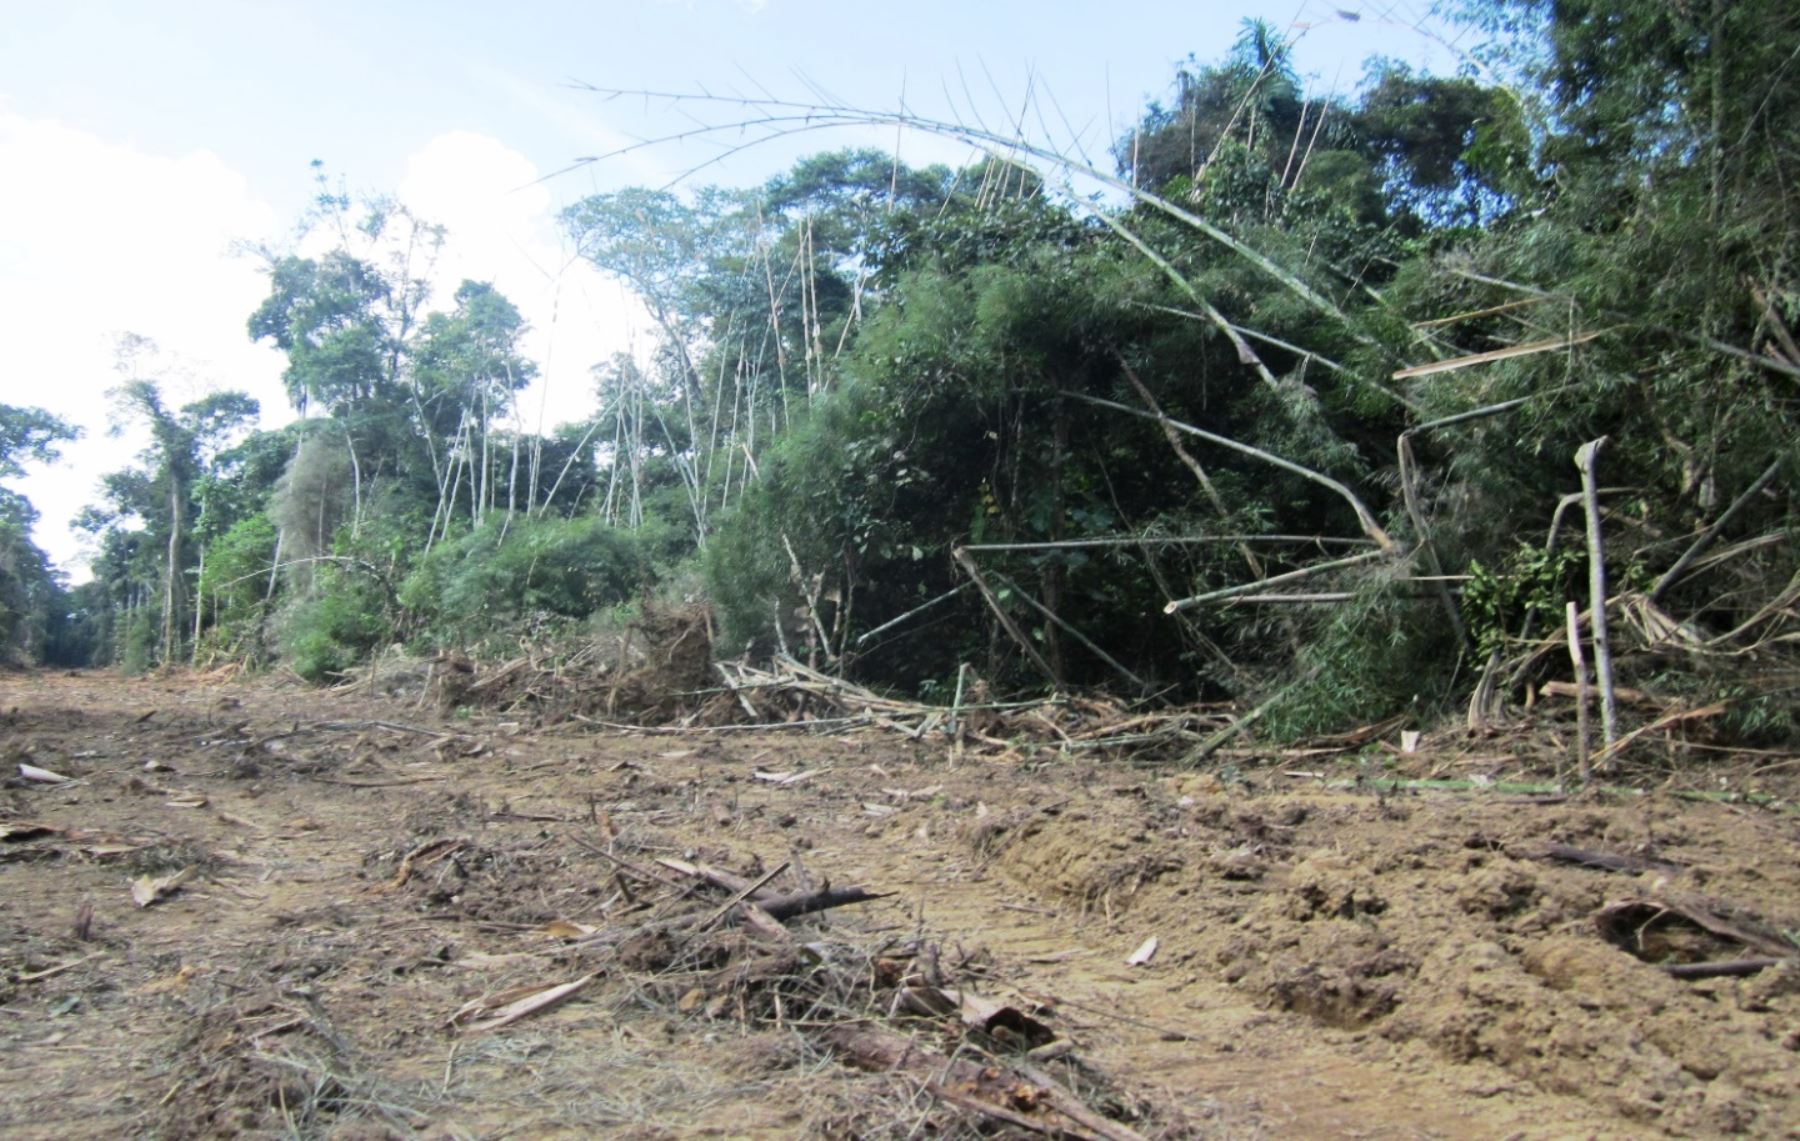 Construcción de carretera afecta biodiversidad de áreas boscosas de Madre de Dios. ANDINA/archivo